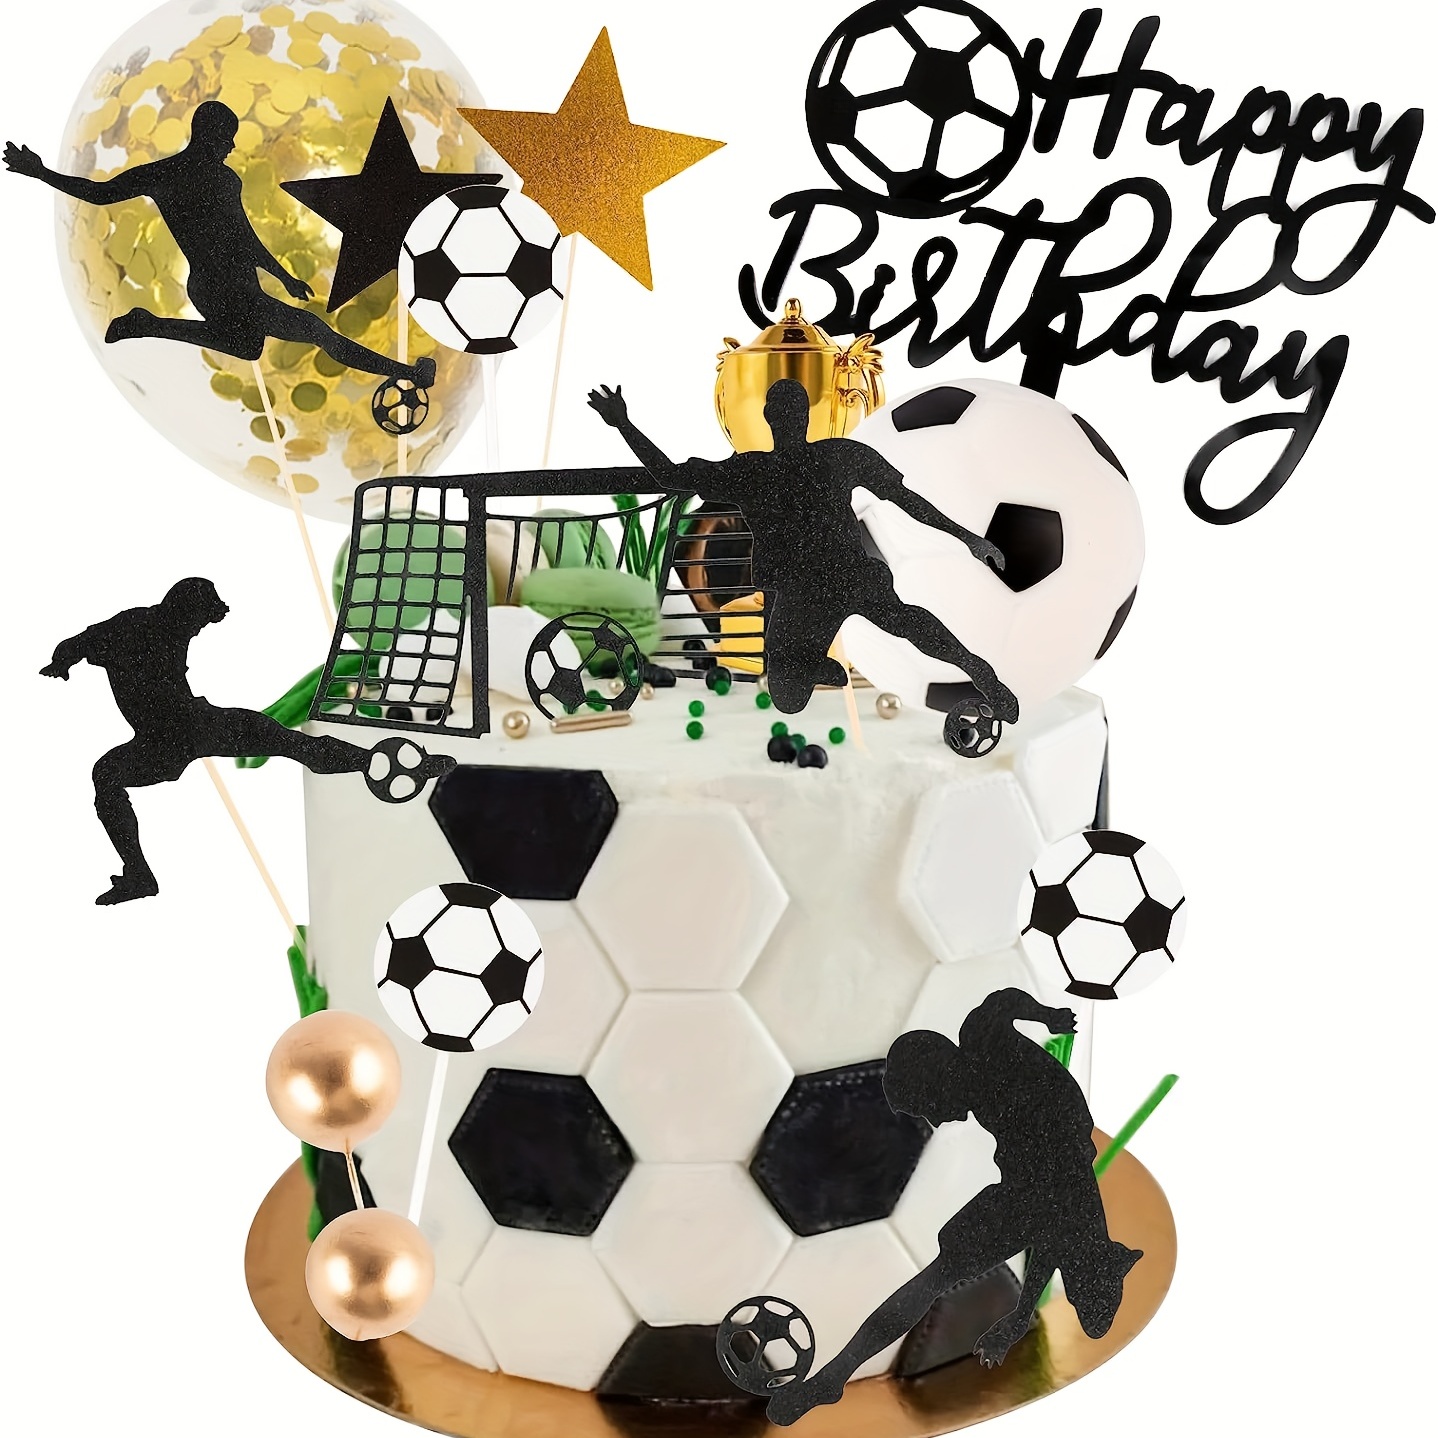 Décoration de gâteau de football, décoration de gâteau pour gâteau